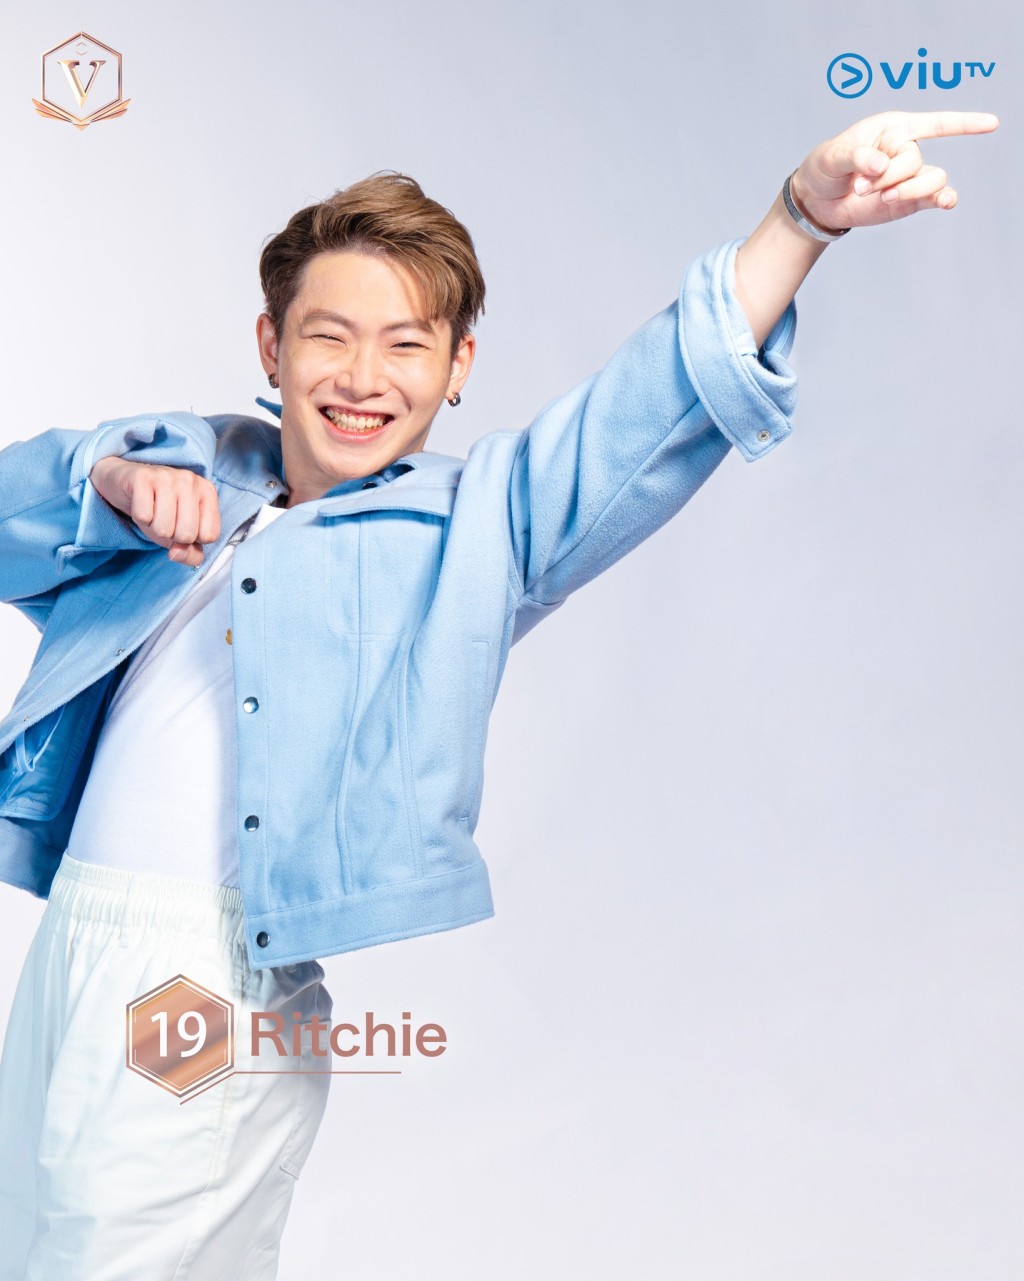 梁玮城（Ritchie） 年龄： 25 职业： 审计师 擅长： 唱歌、写歌 IG：ritchie_leong #吉隆坡参赛者